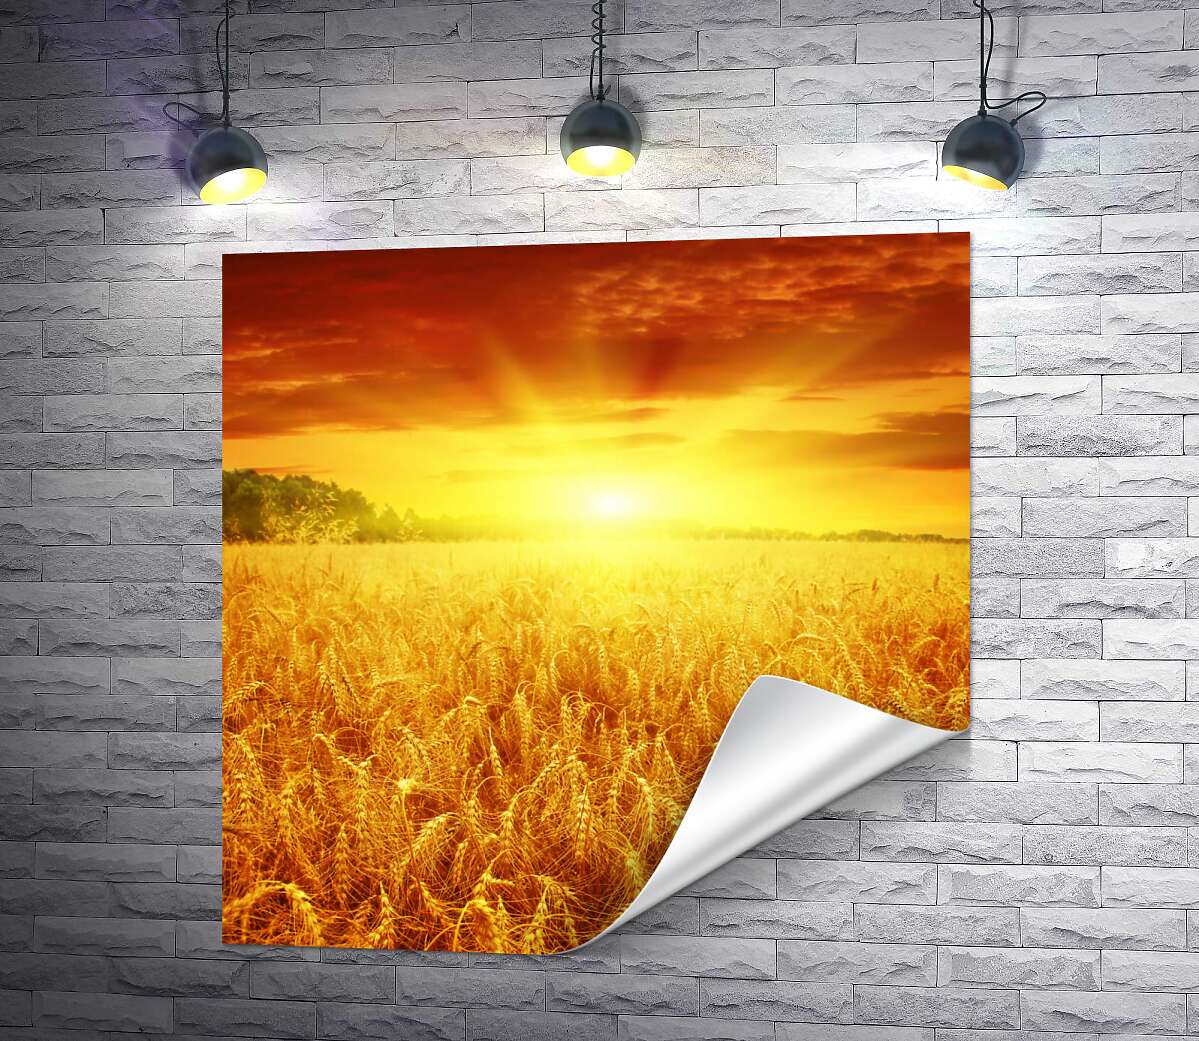 друк Налита пшениця колоситься золотом в променях сонця